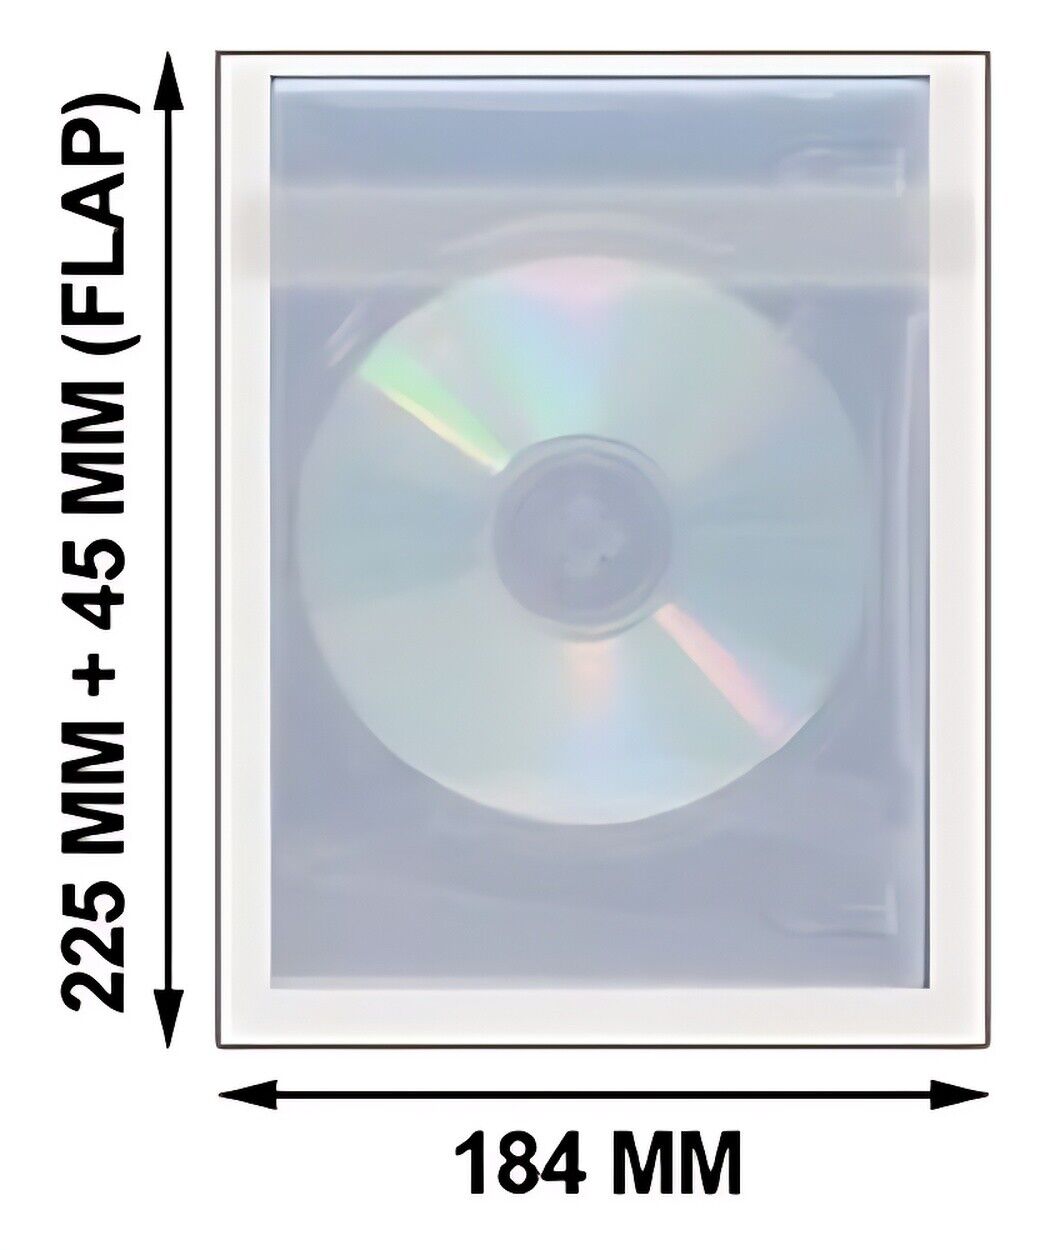 OPP Plastic Wrap Bag for 14 Disc DVD Case 45mm Lot